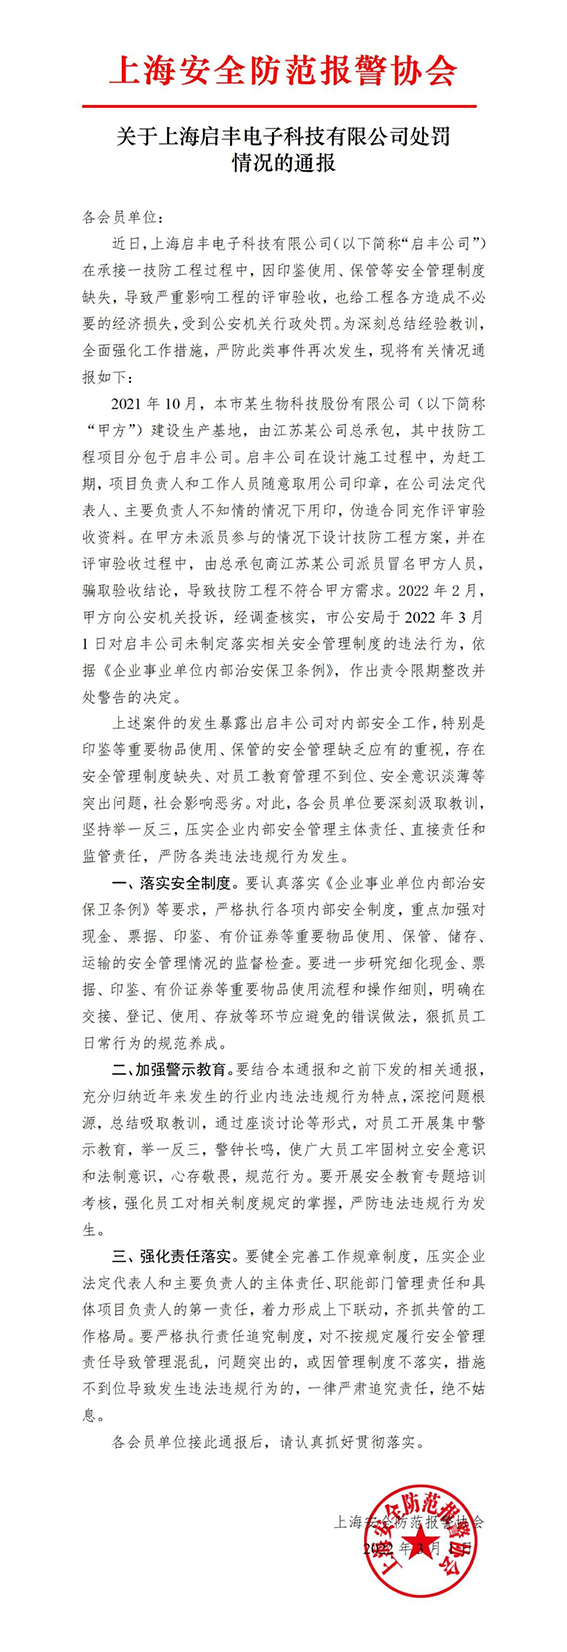 关于上海启丰电子科技有限公司处罚情况的通报w.jpg